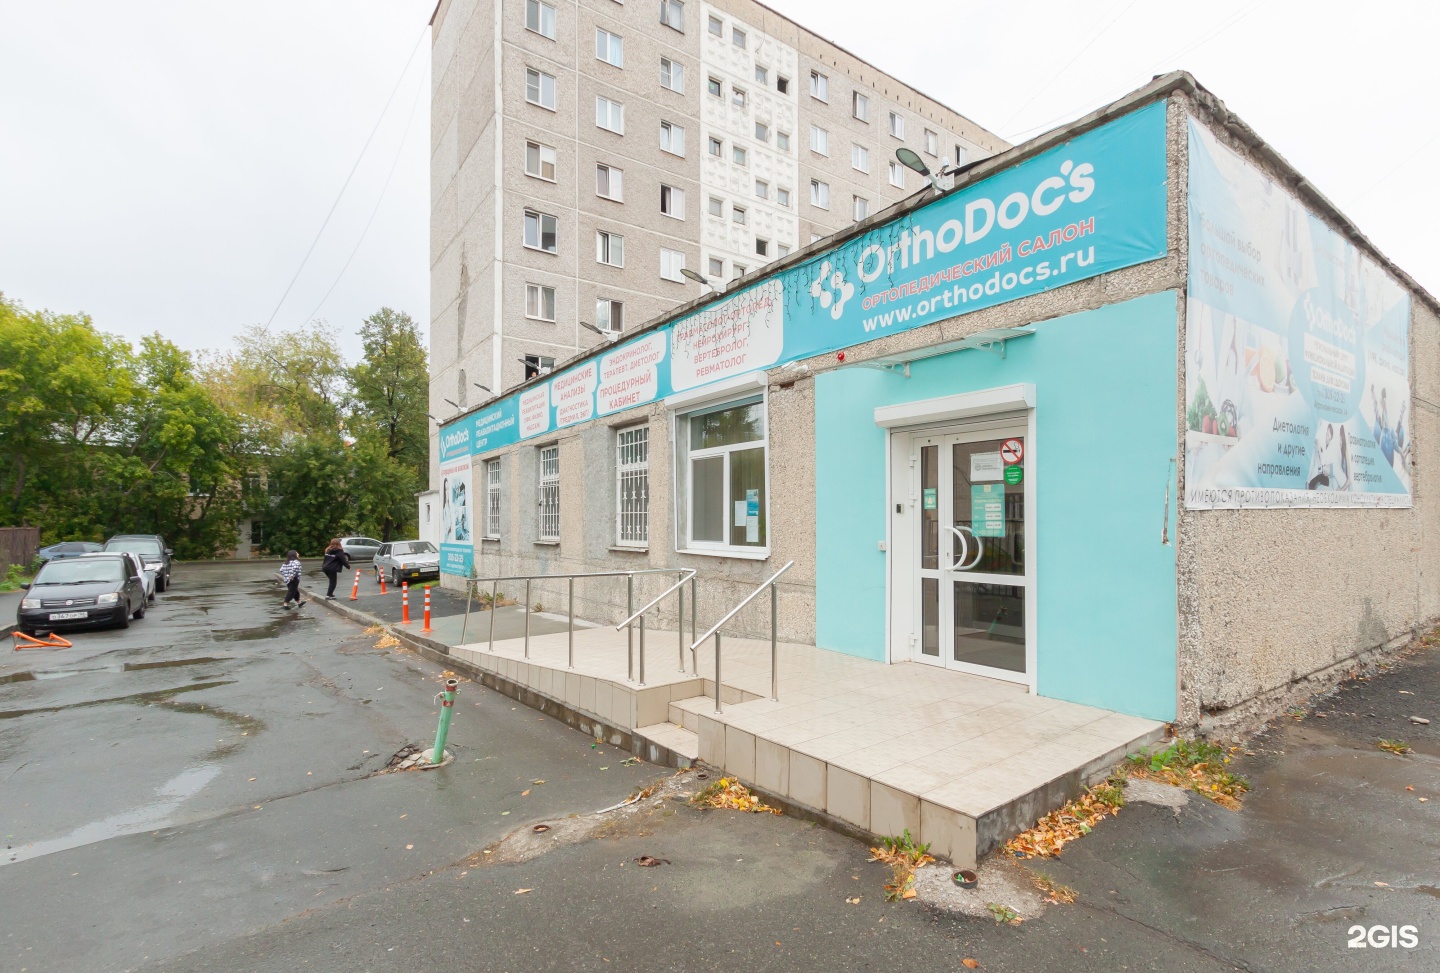 Центр медицинской реабилитации ORTHODOCS. Агрономическая 40 Екатеринбург.